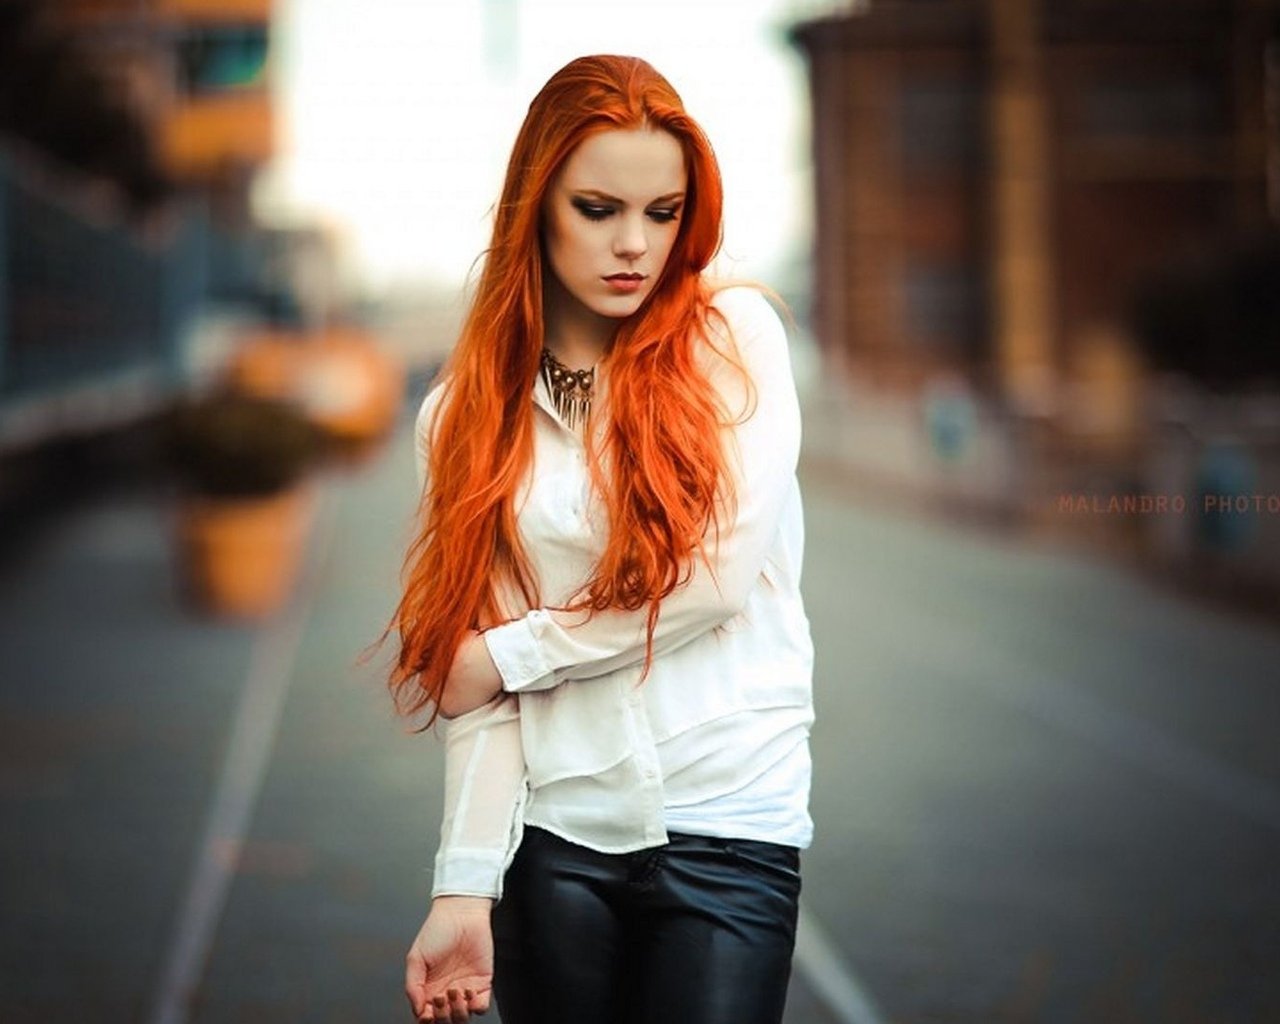 София Даниленко с рыжими волосами